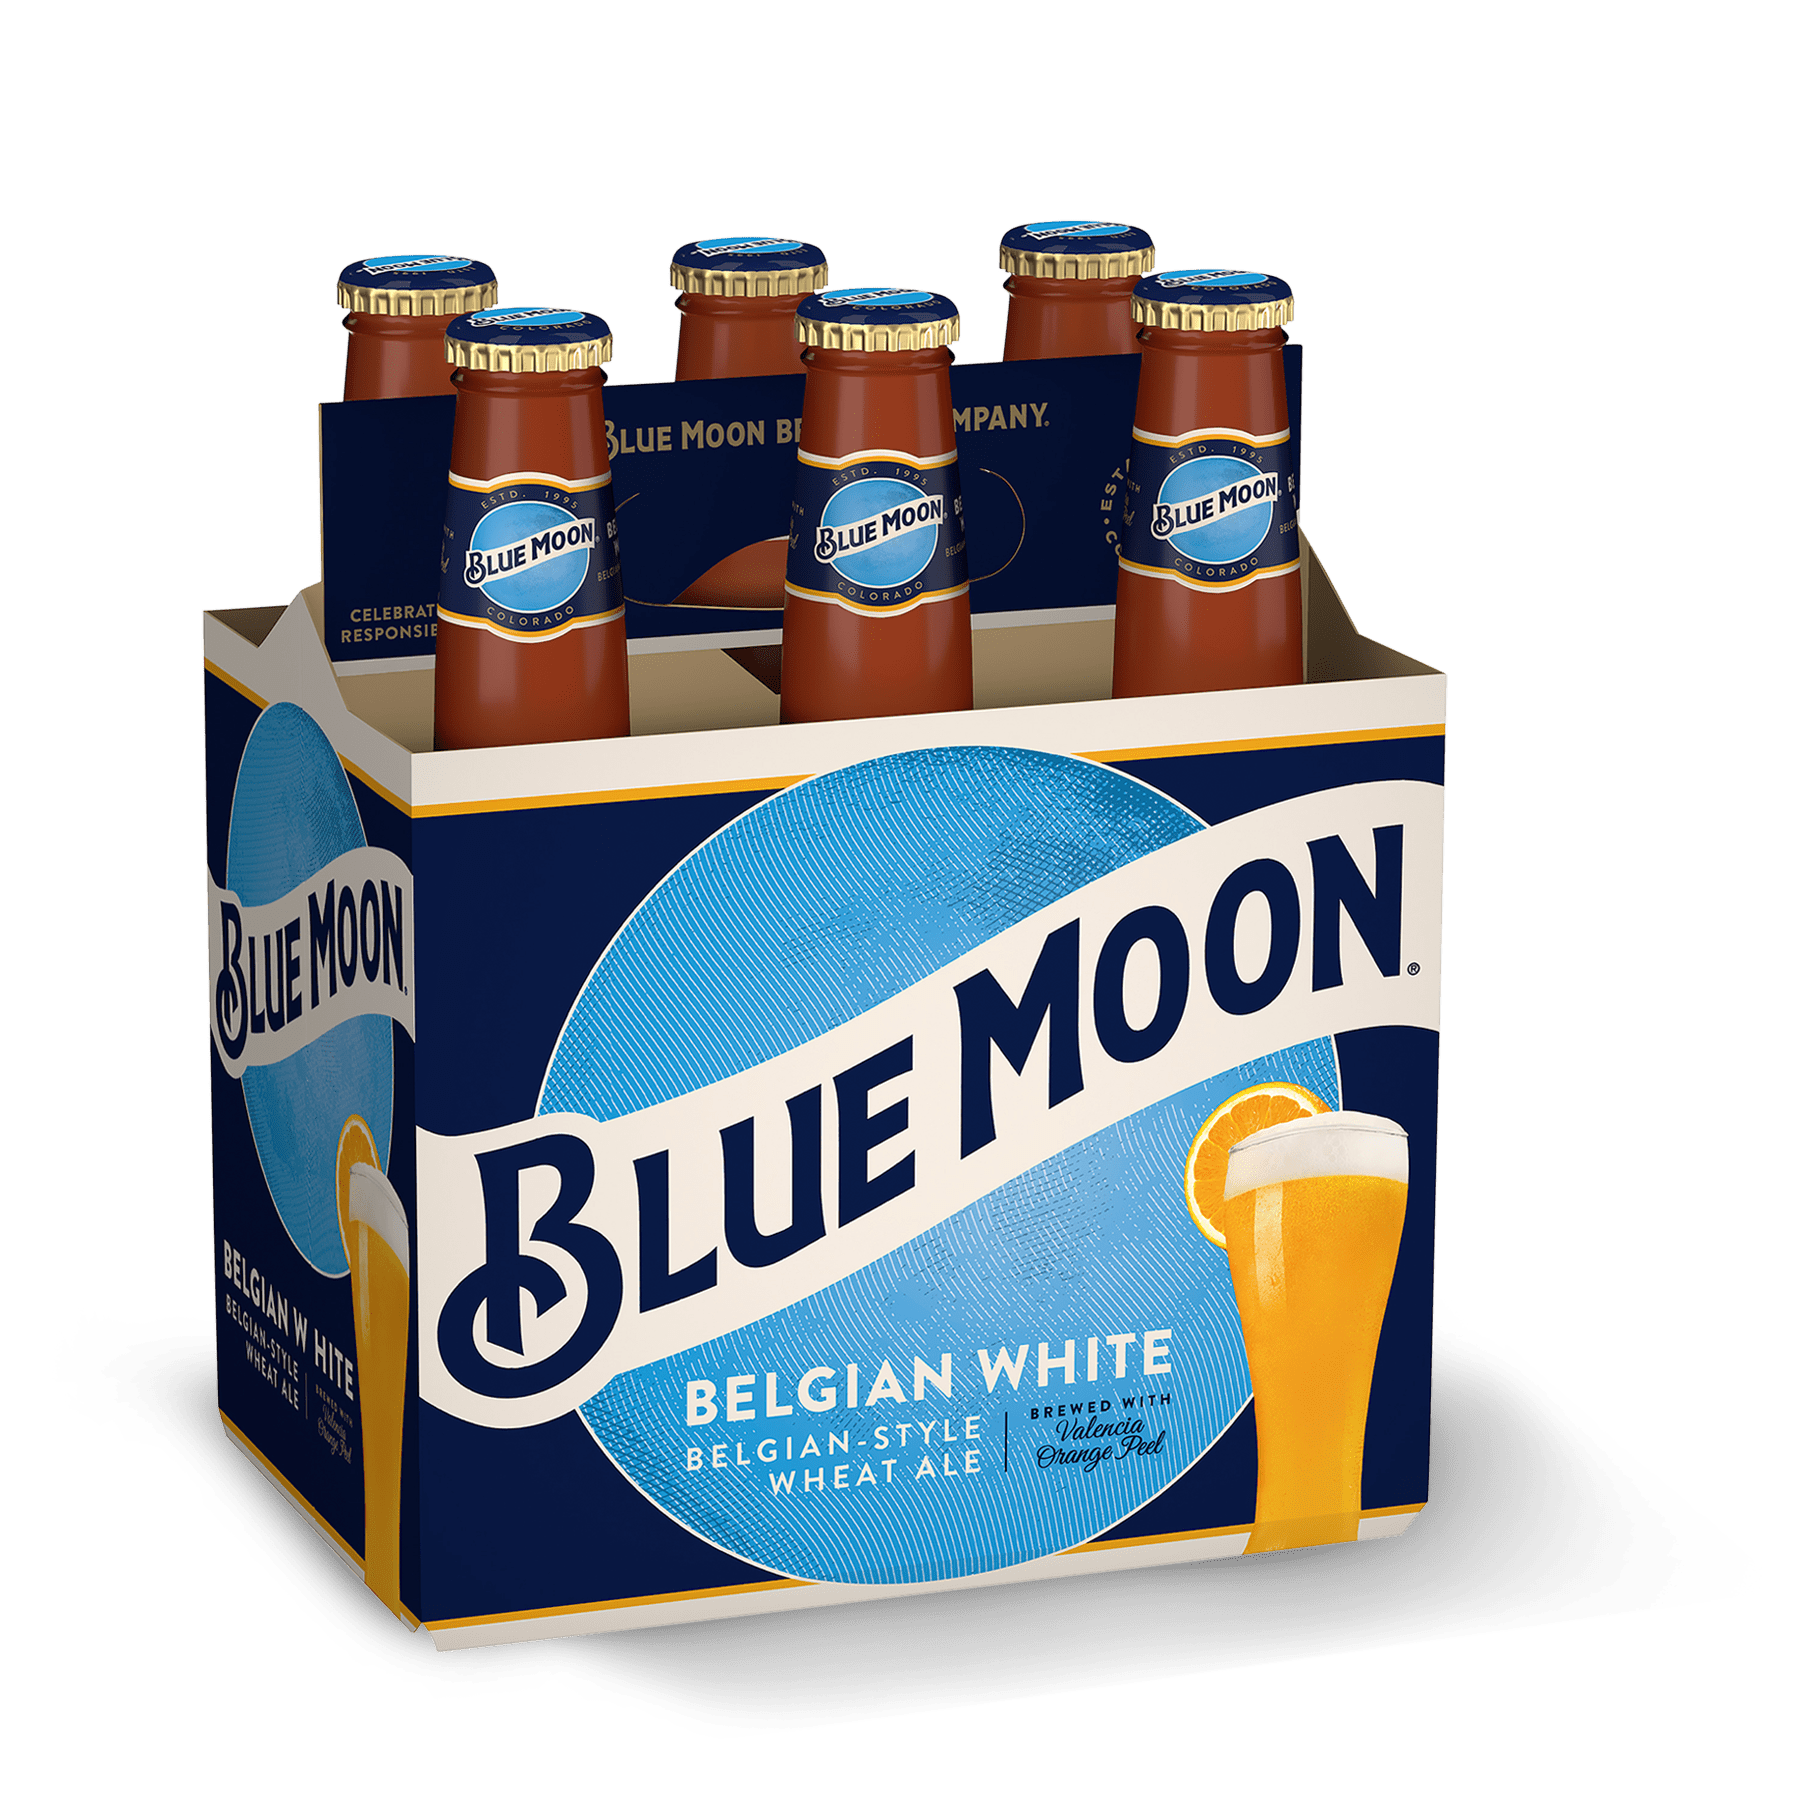 Blue Moon Beer. Blue Moon Wheat Beer. Пиво с синей этикеткой. Блю манки пиво. Пиво мун